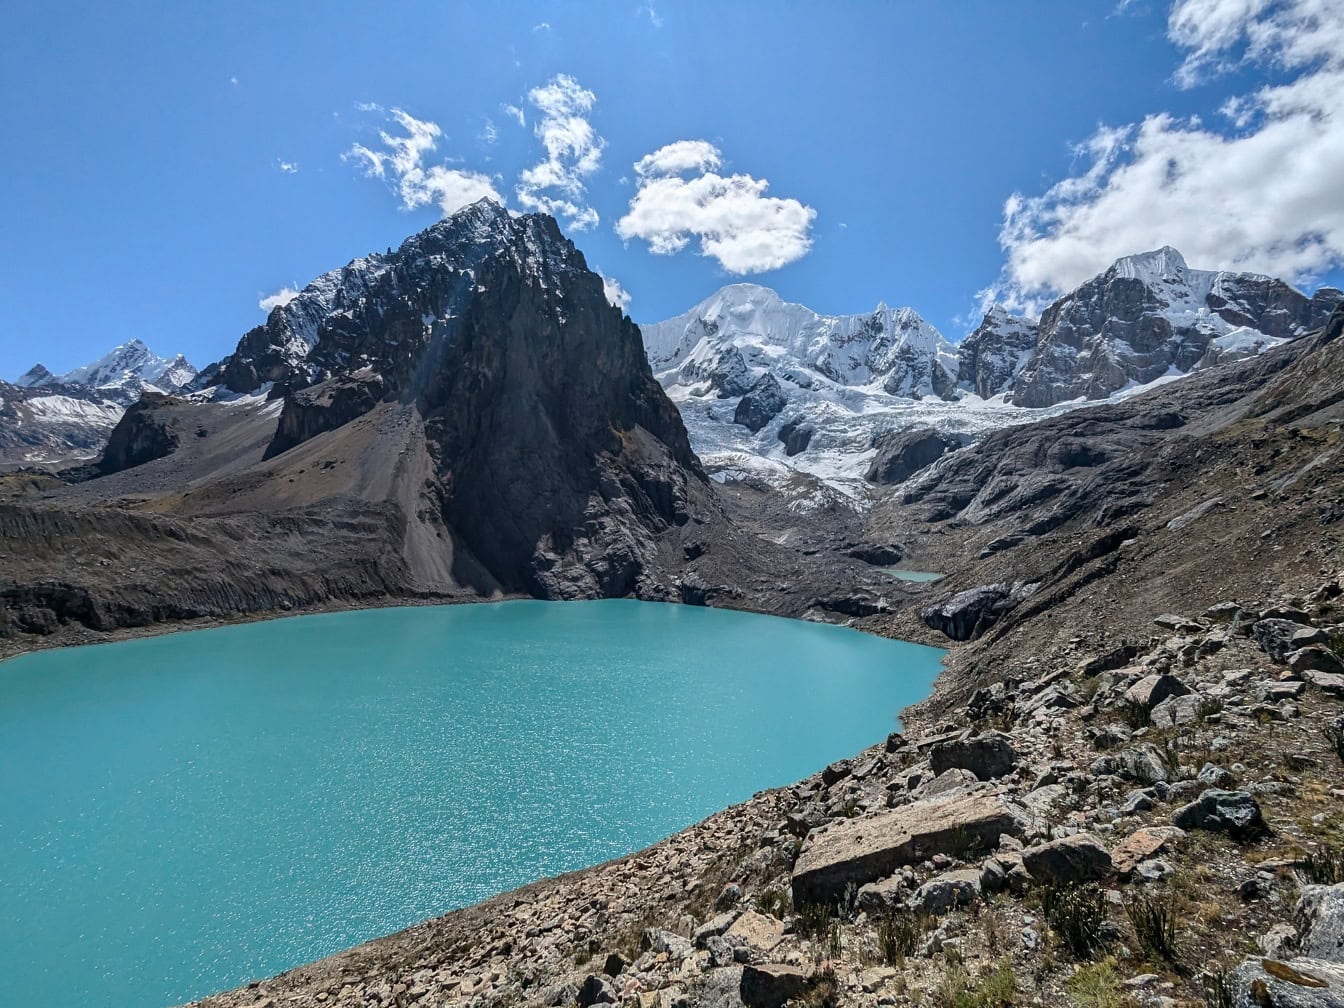 O panoramă uluitoare a unui frumos lac turcoaz în parcul natural al unui Peru înalt în Anzi